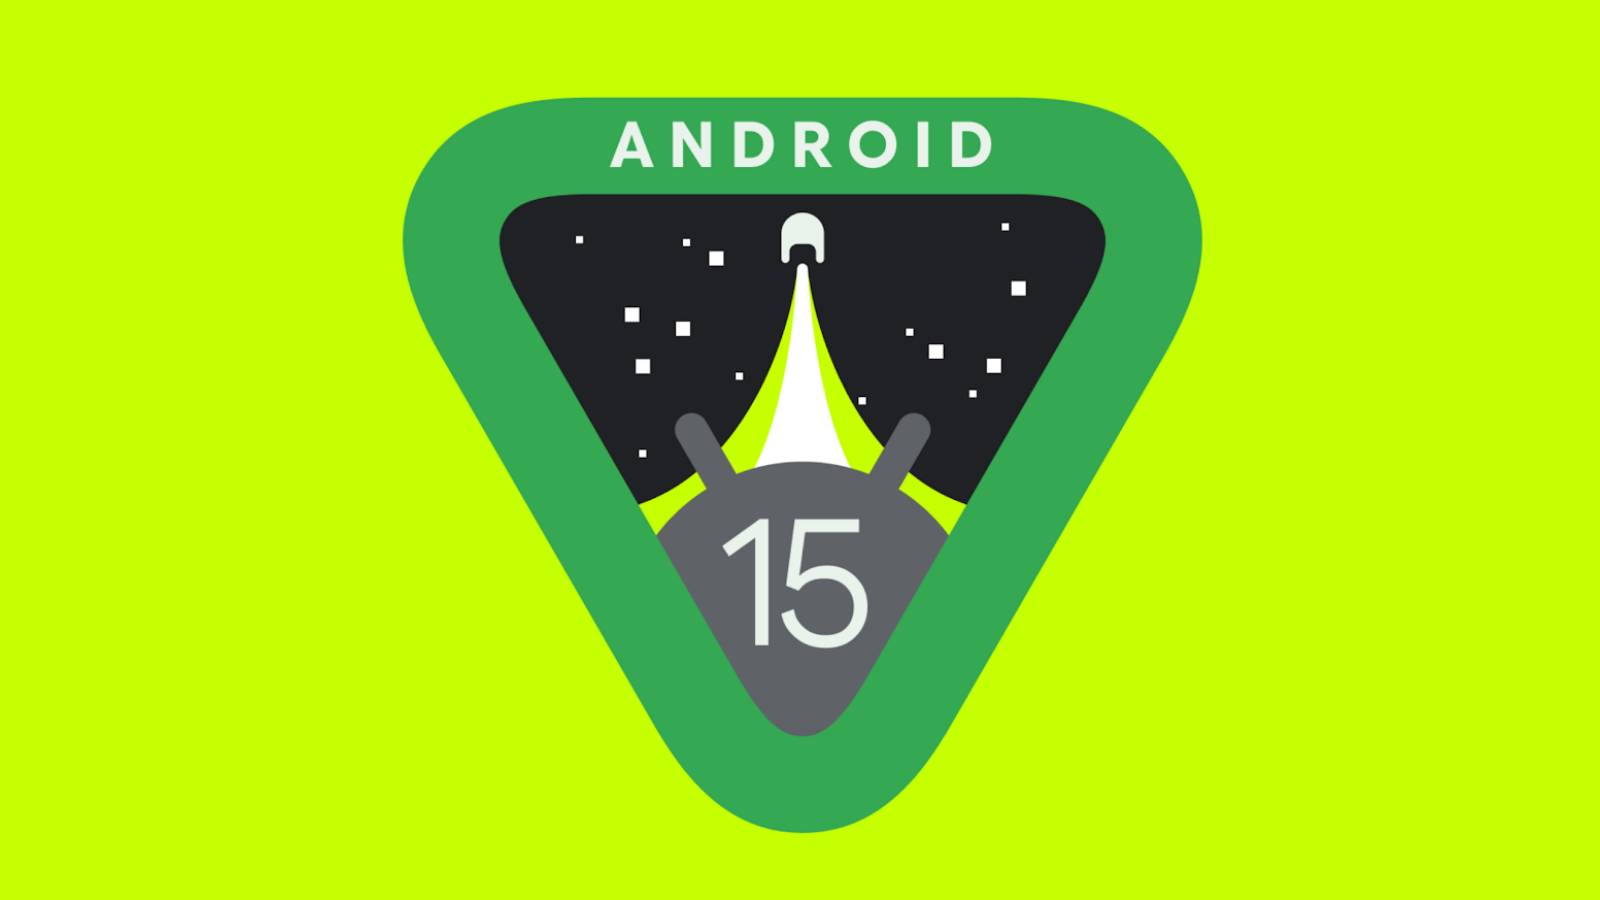 Android 15 tuo Google Mapsiin odottamattoman toiminnon